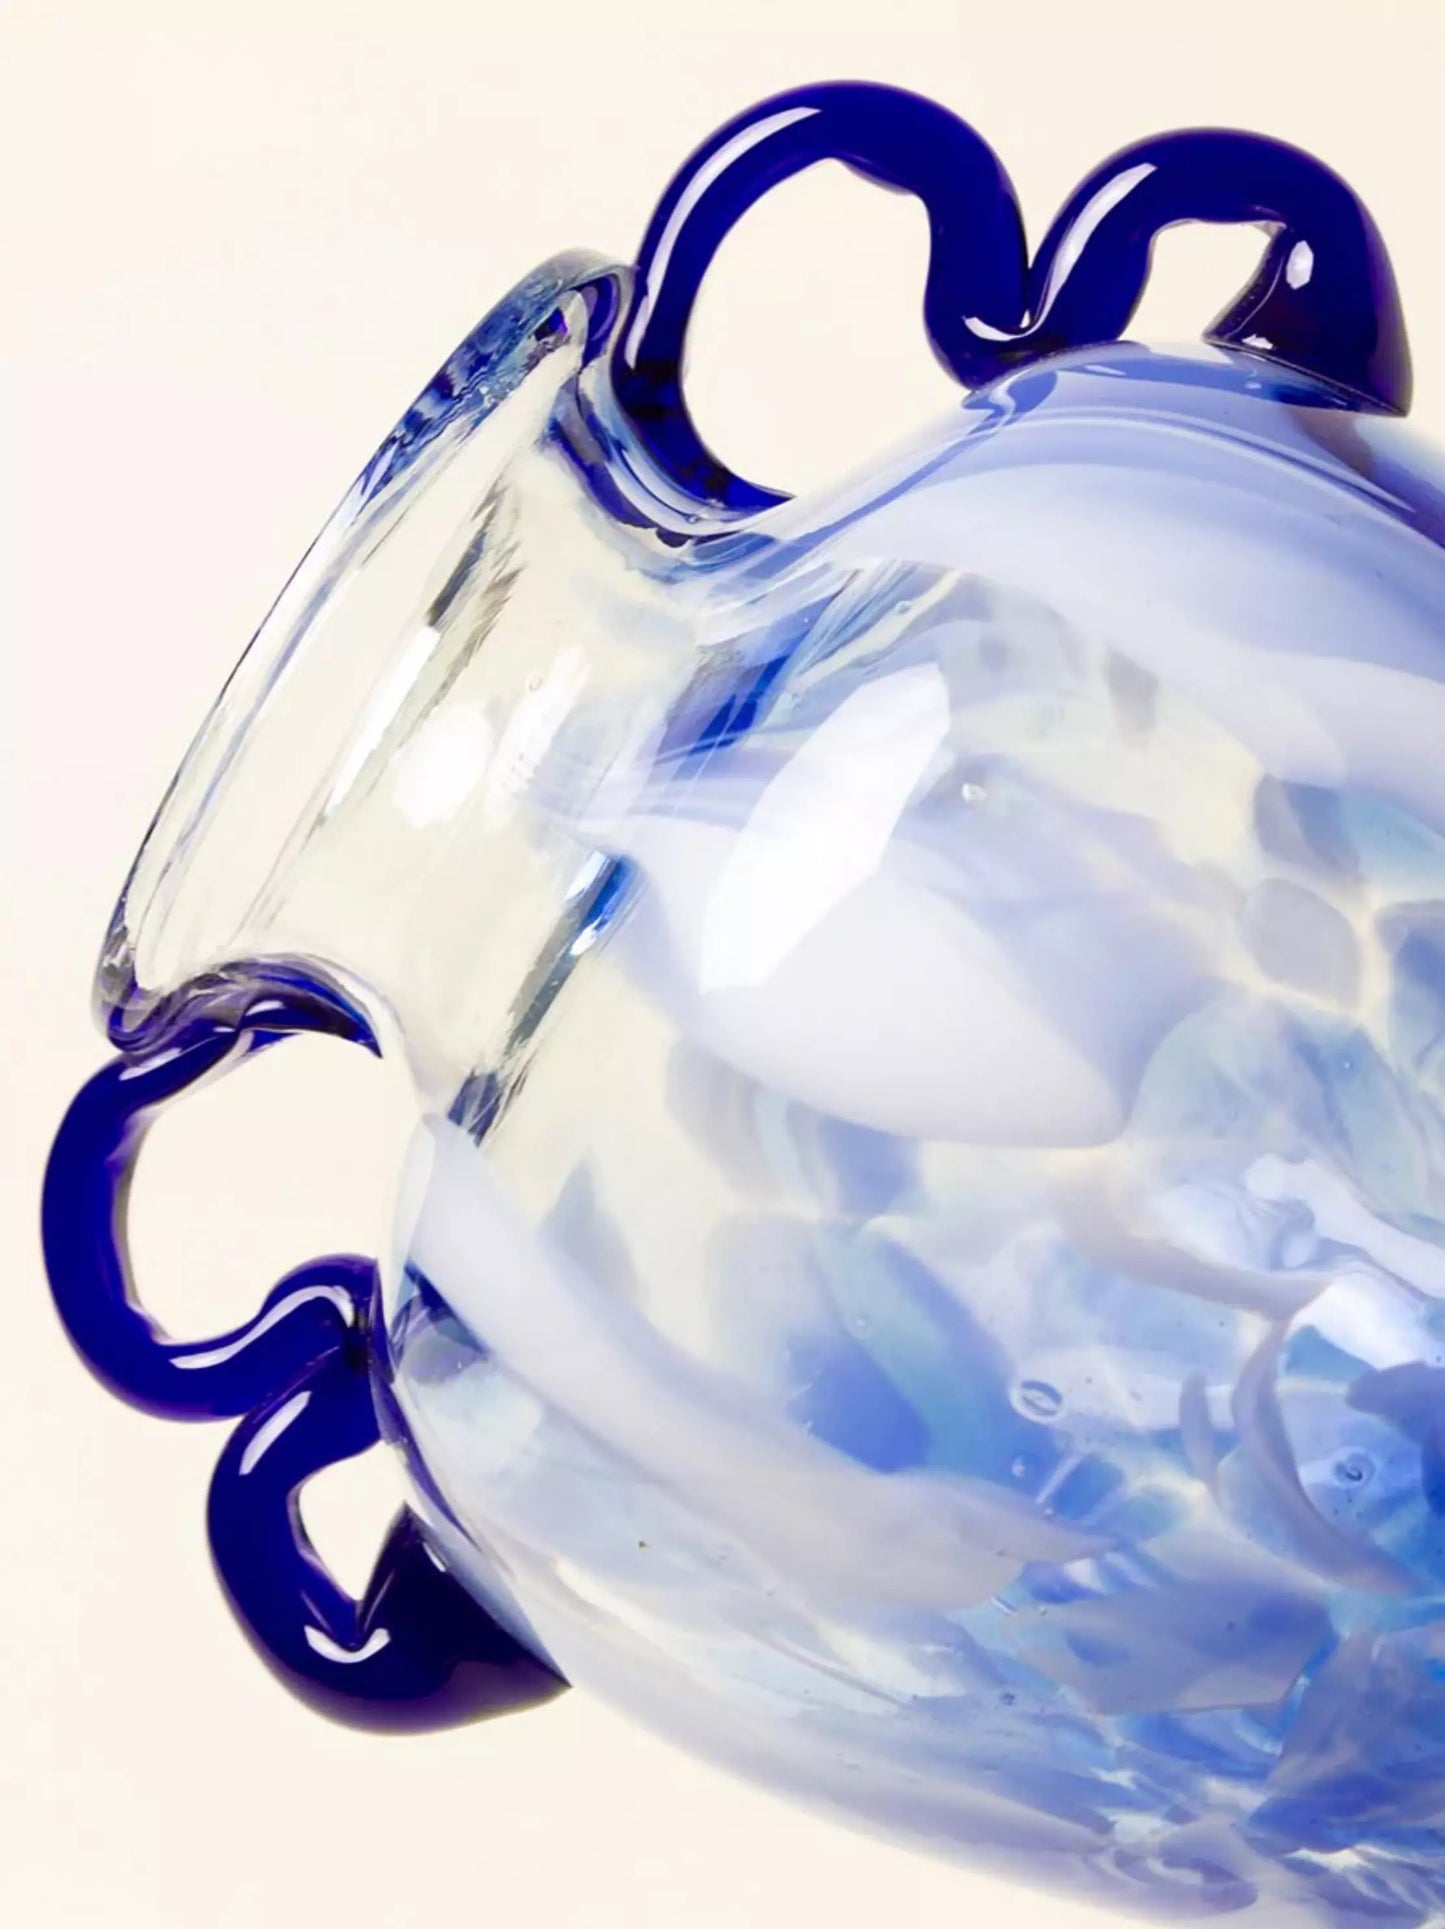 Blue Marbled Glass Vase